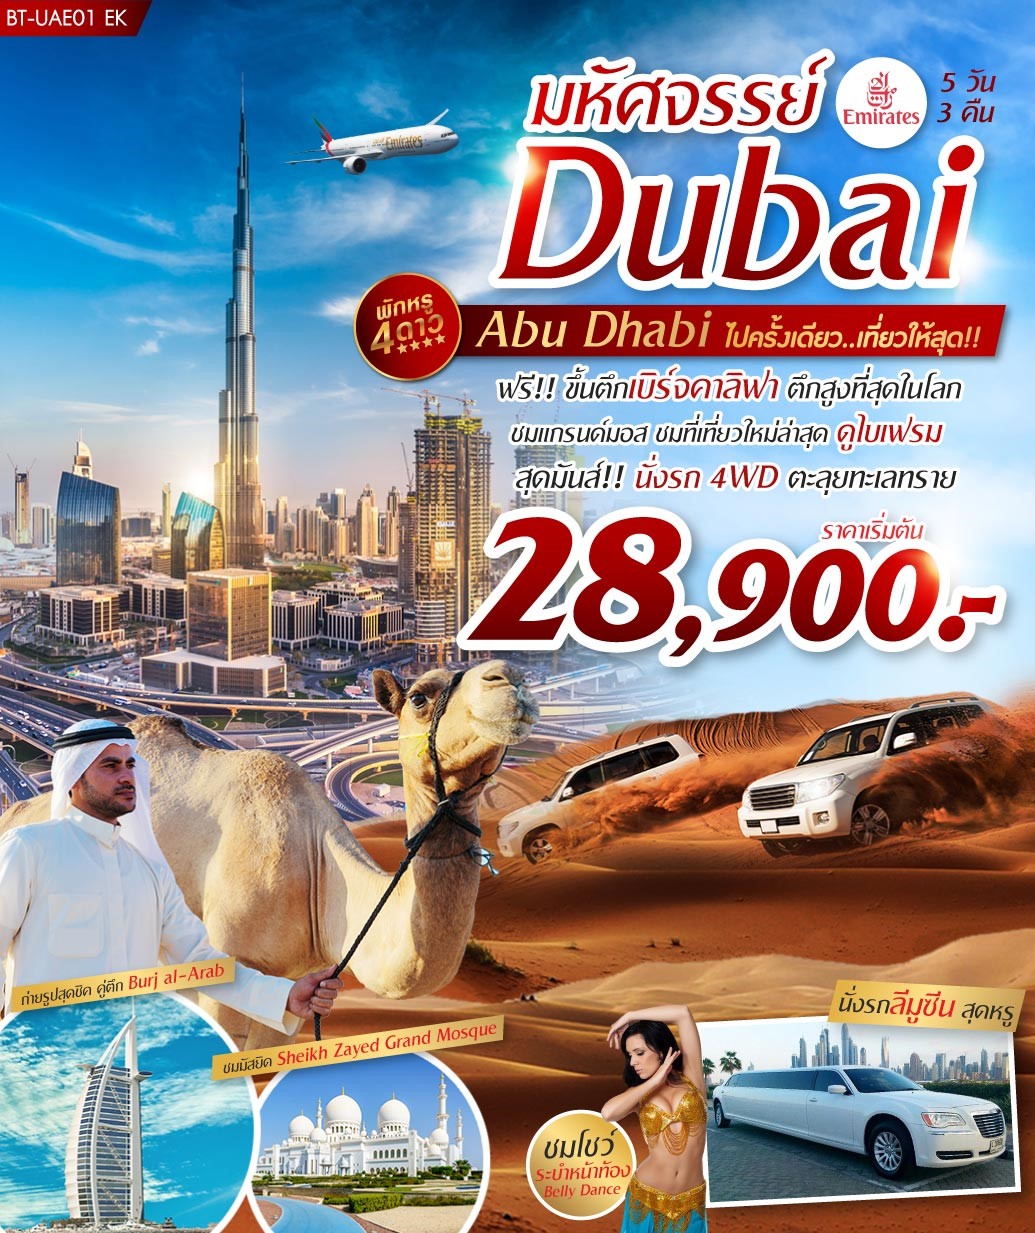 ทัวร์ดูไบ มหัศจรรย์ DUBAI ABUDHABI 5วัน3คืน (SEP19)(BT-UAE01 EK)